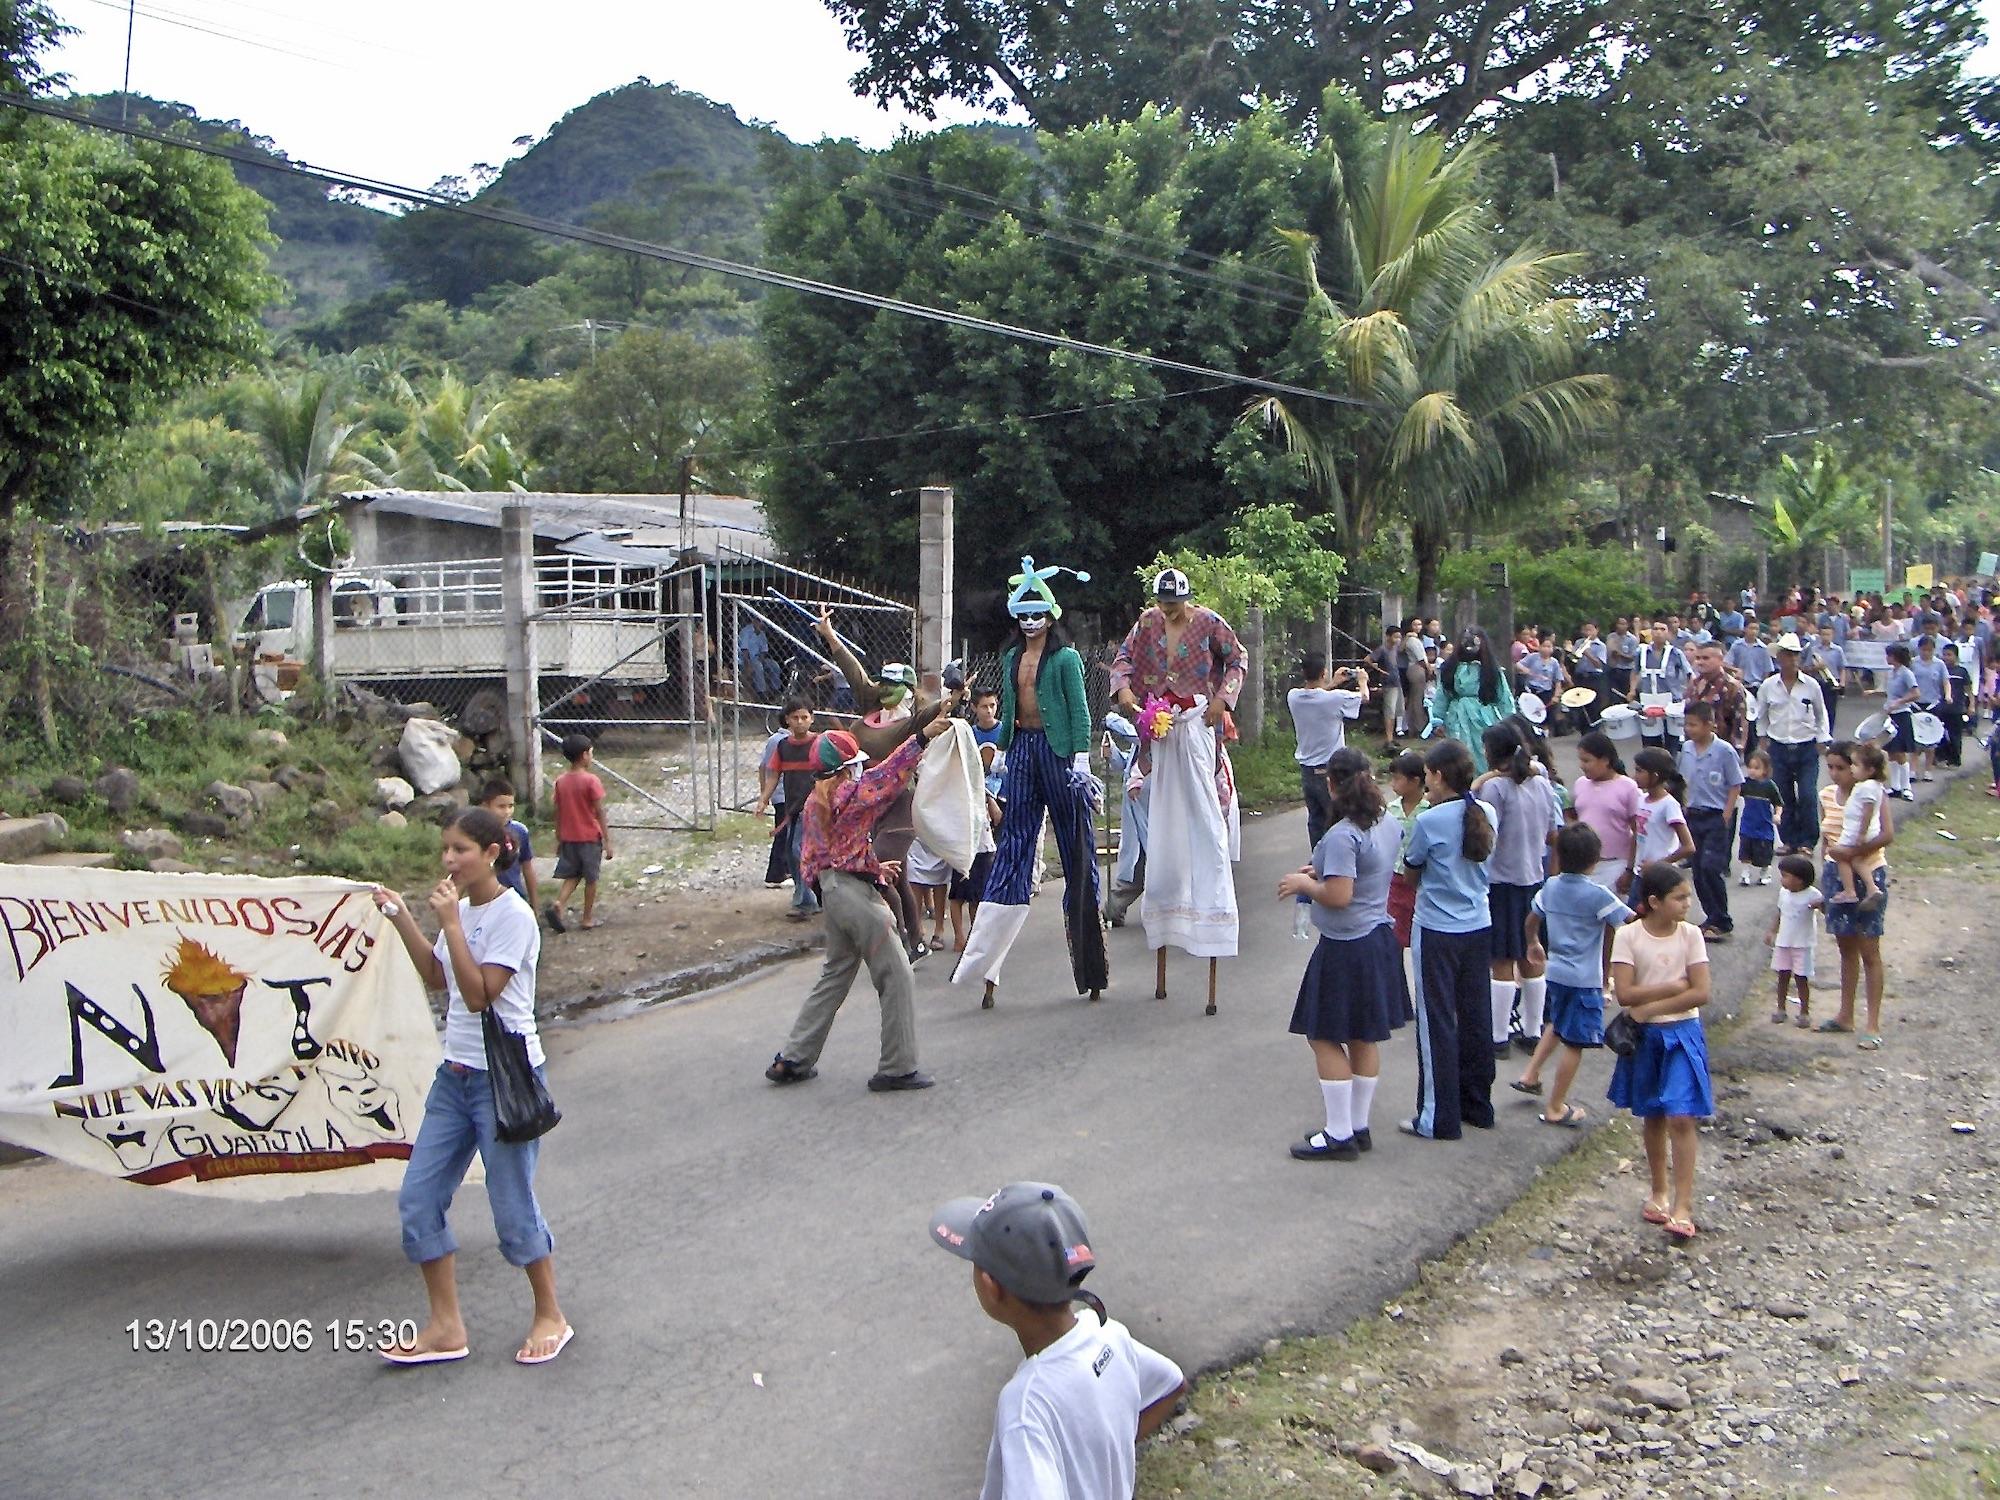 Habitantes del cantón Guarjila durante la celebración de sus fiestas patronales. Foto cortesía del autor.